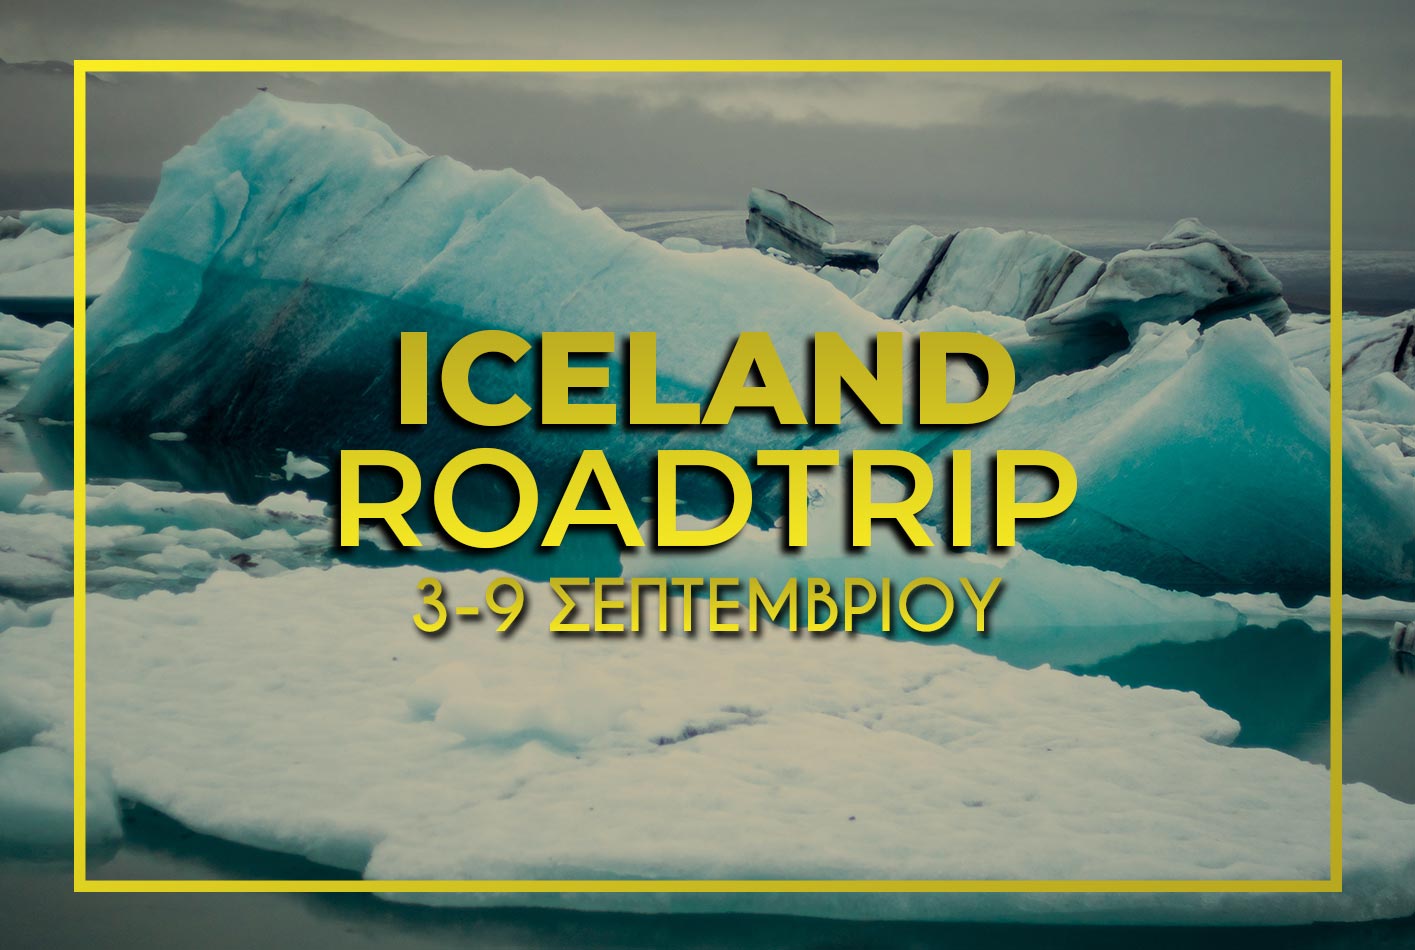 Ταξίδι στην Ισλανδία για βόρειο σέλας